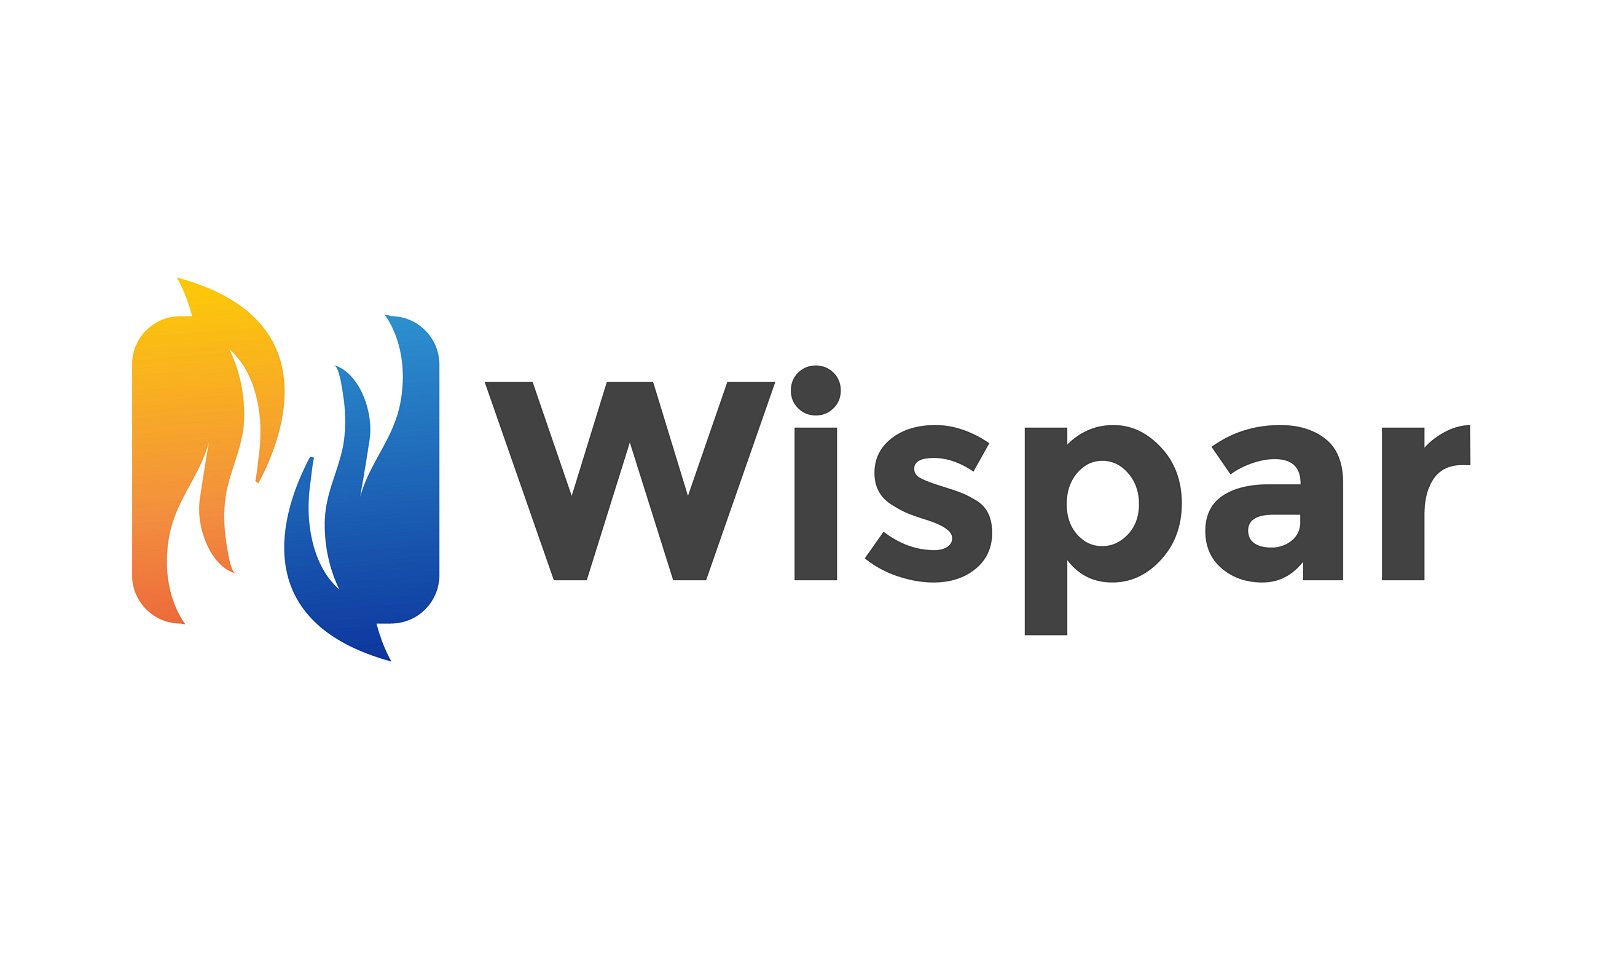 Wispar.com - Creative brandable domain for sale